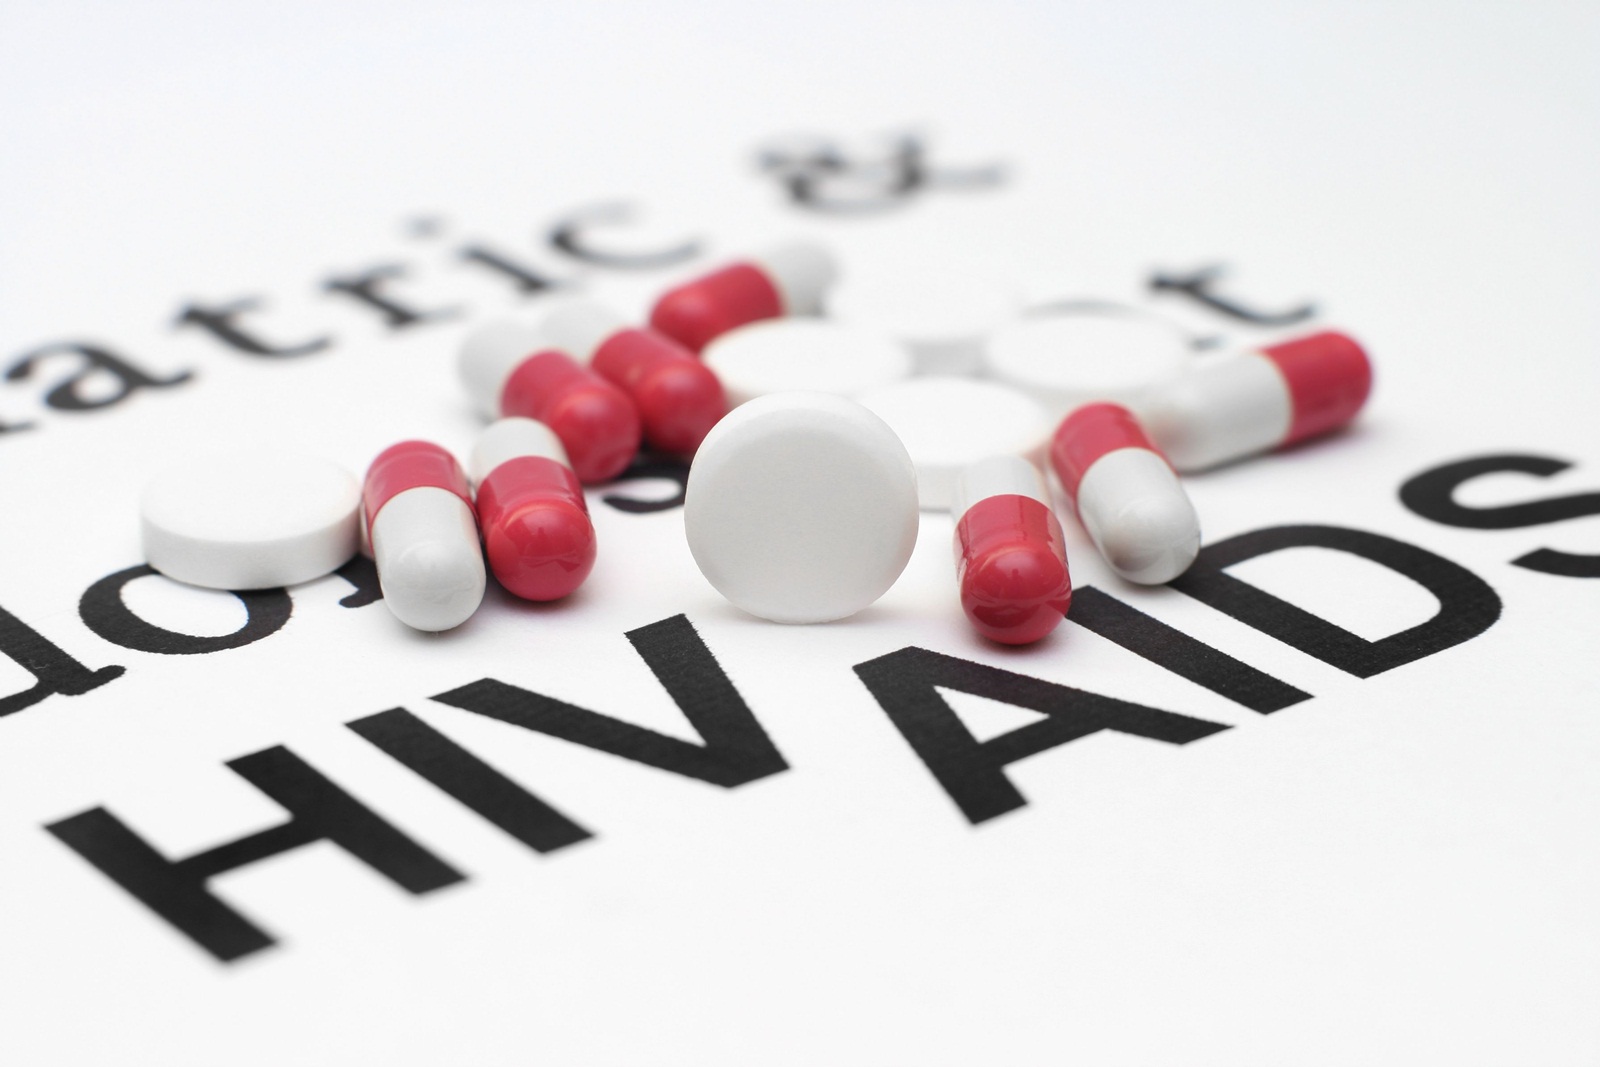 หนุนกินยาป้องกันโรคเอดส์กลุ่มเสี่ยง thaihealth